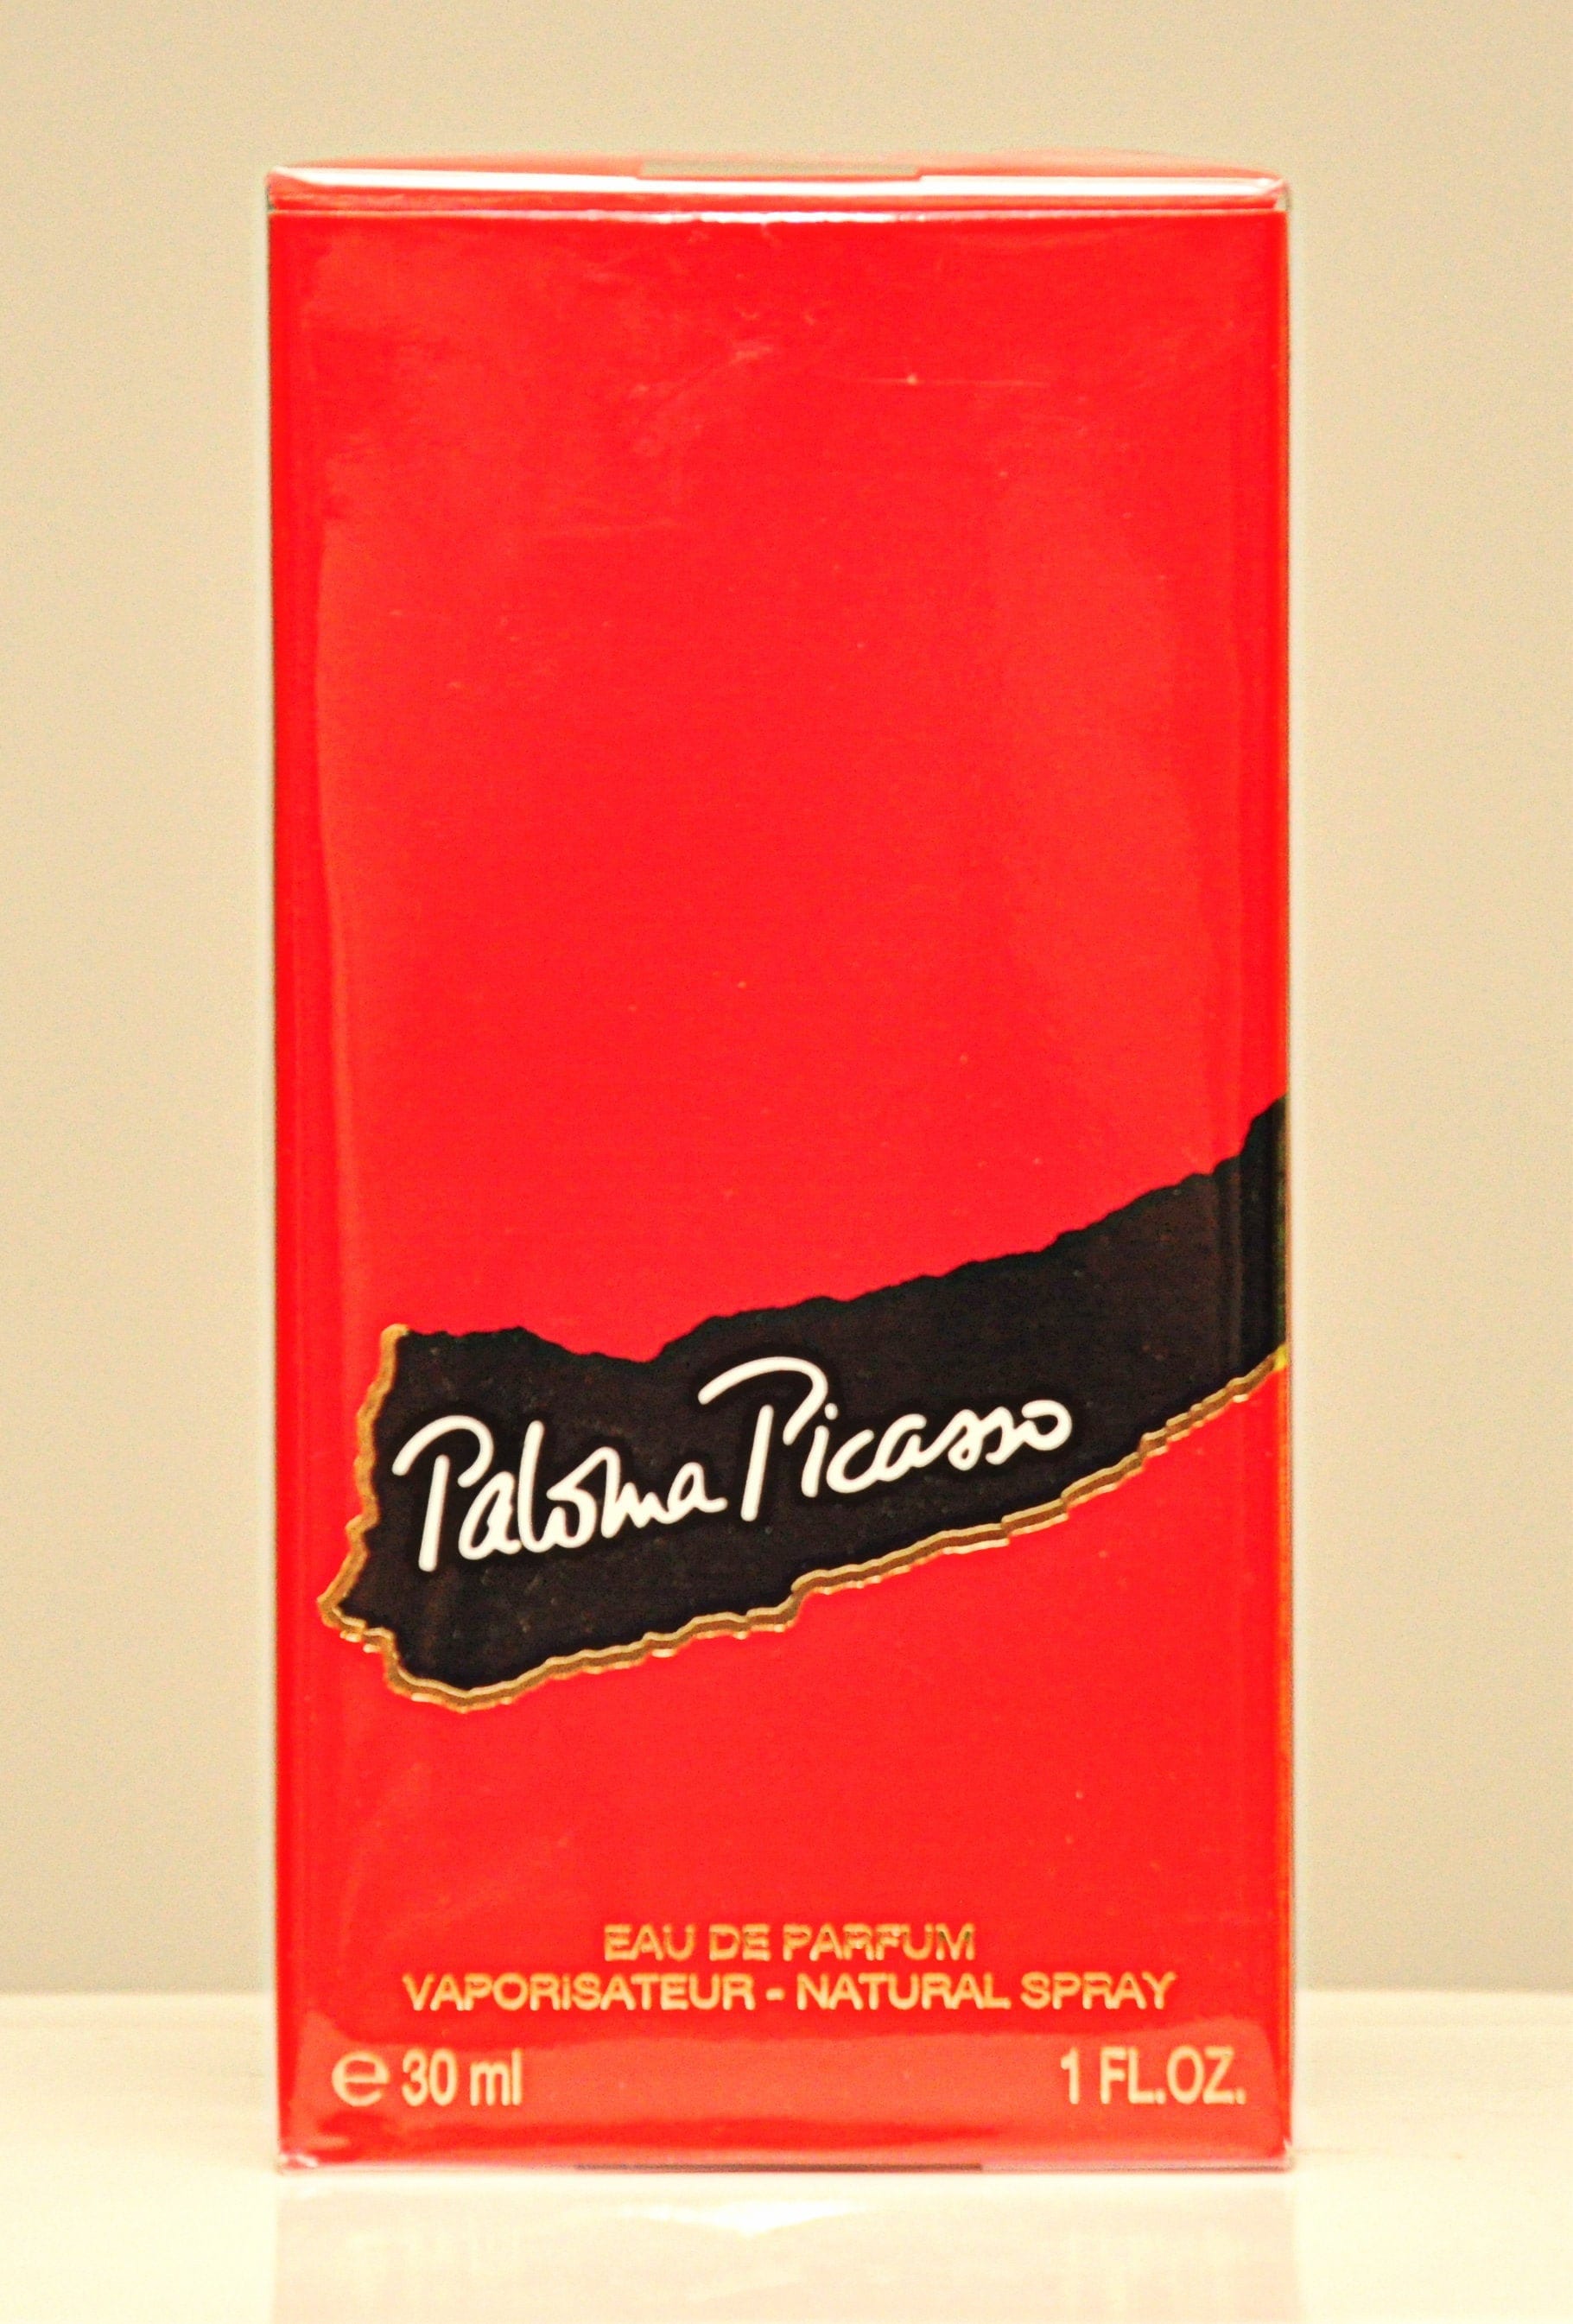 Paloma Picasso Von Eau De Parfum Edp 30 Ml Spray Parfüm Für Frauen 1984 2000Er Version Neu Versiegelt von YourVintagePerfume